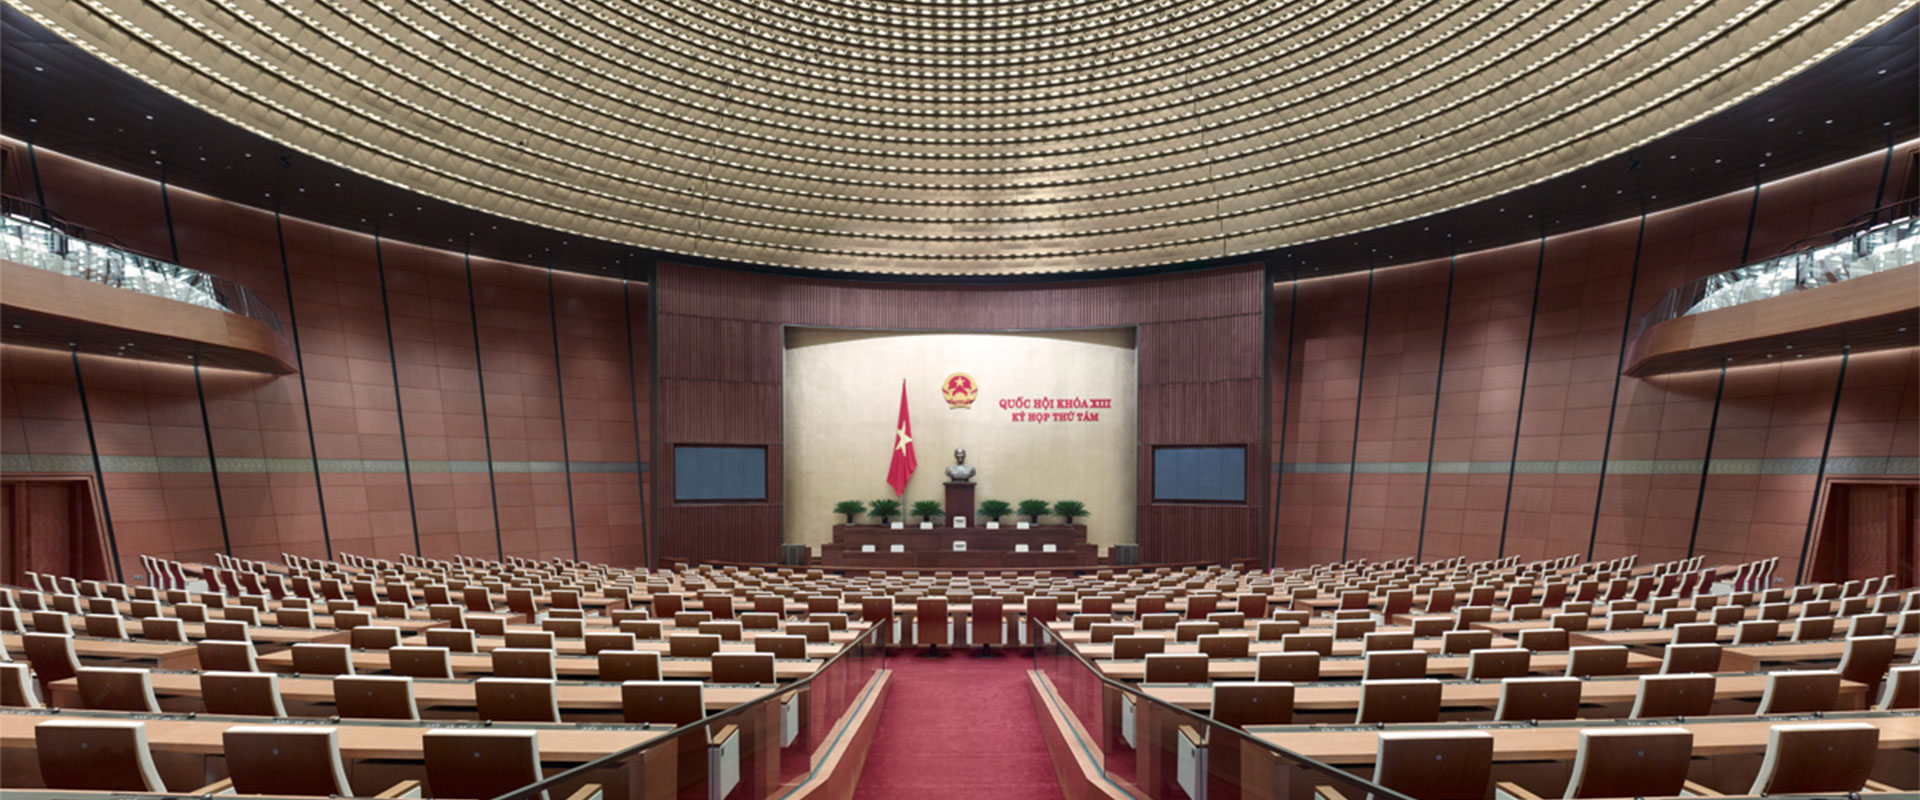 Vietnam Parliament